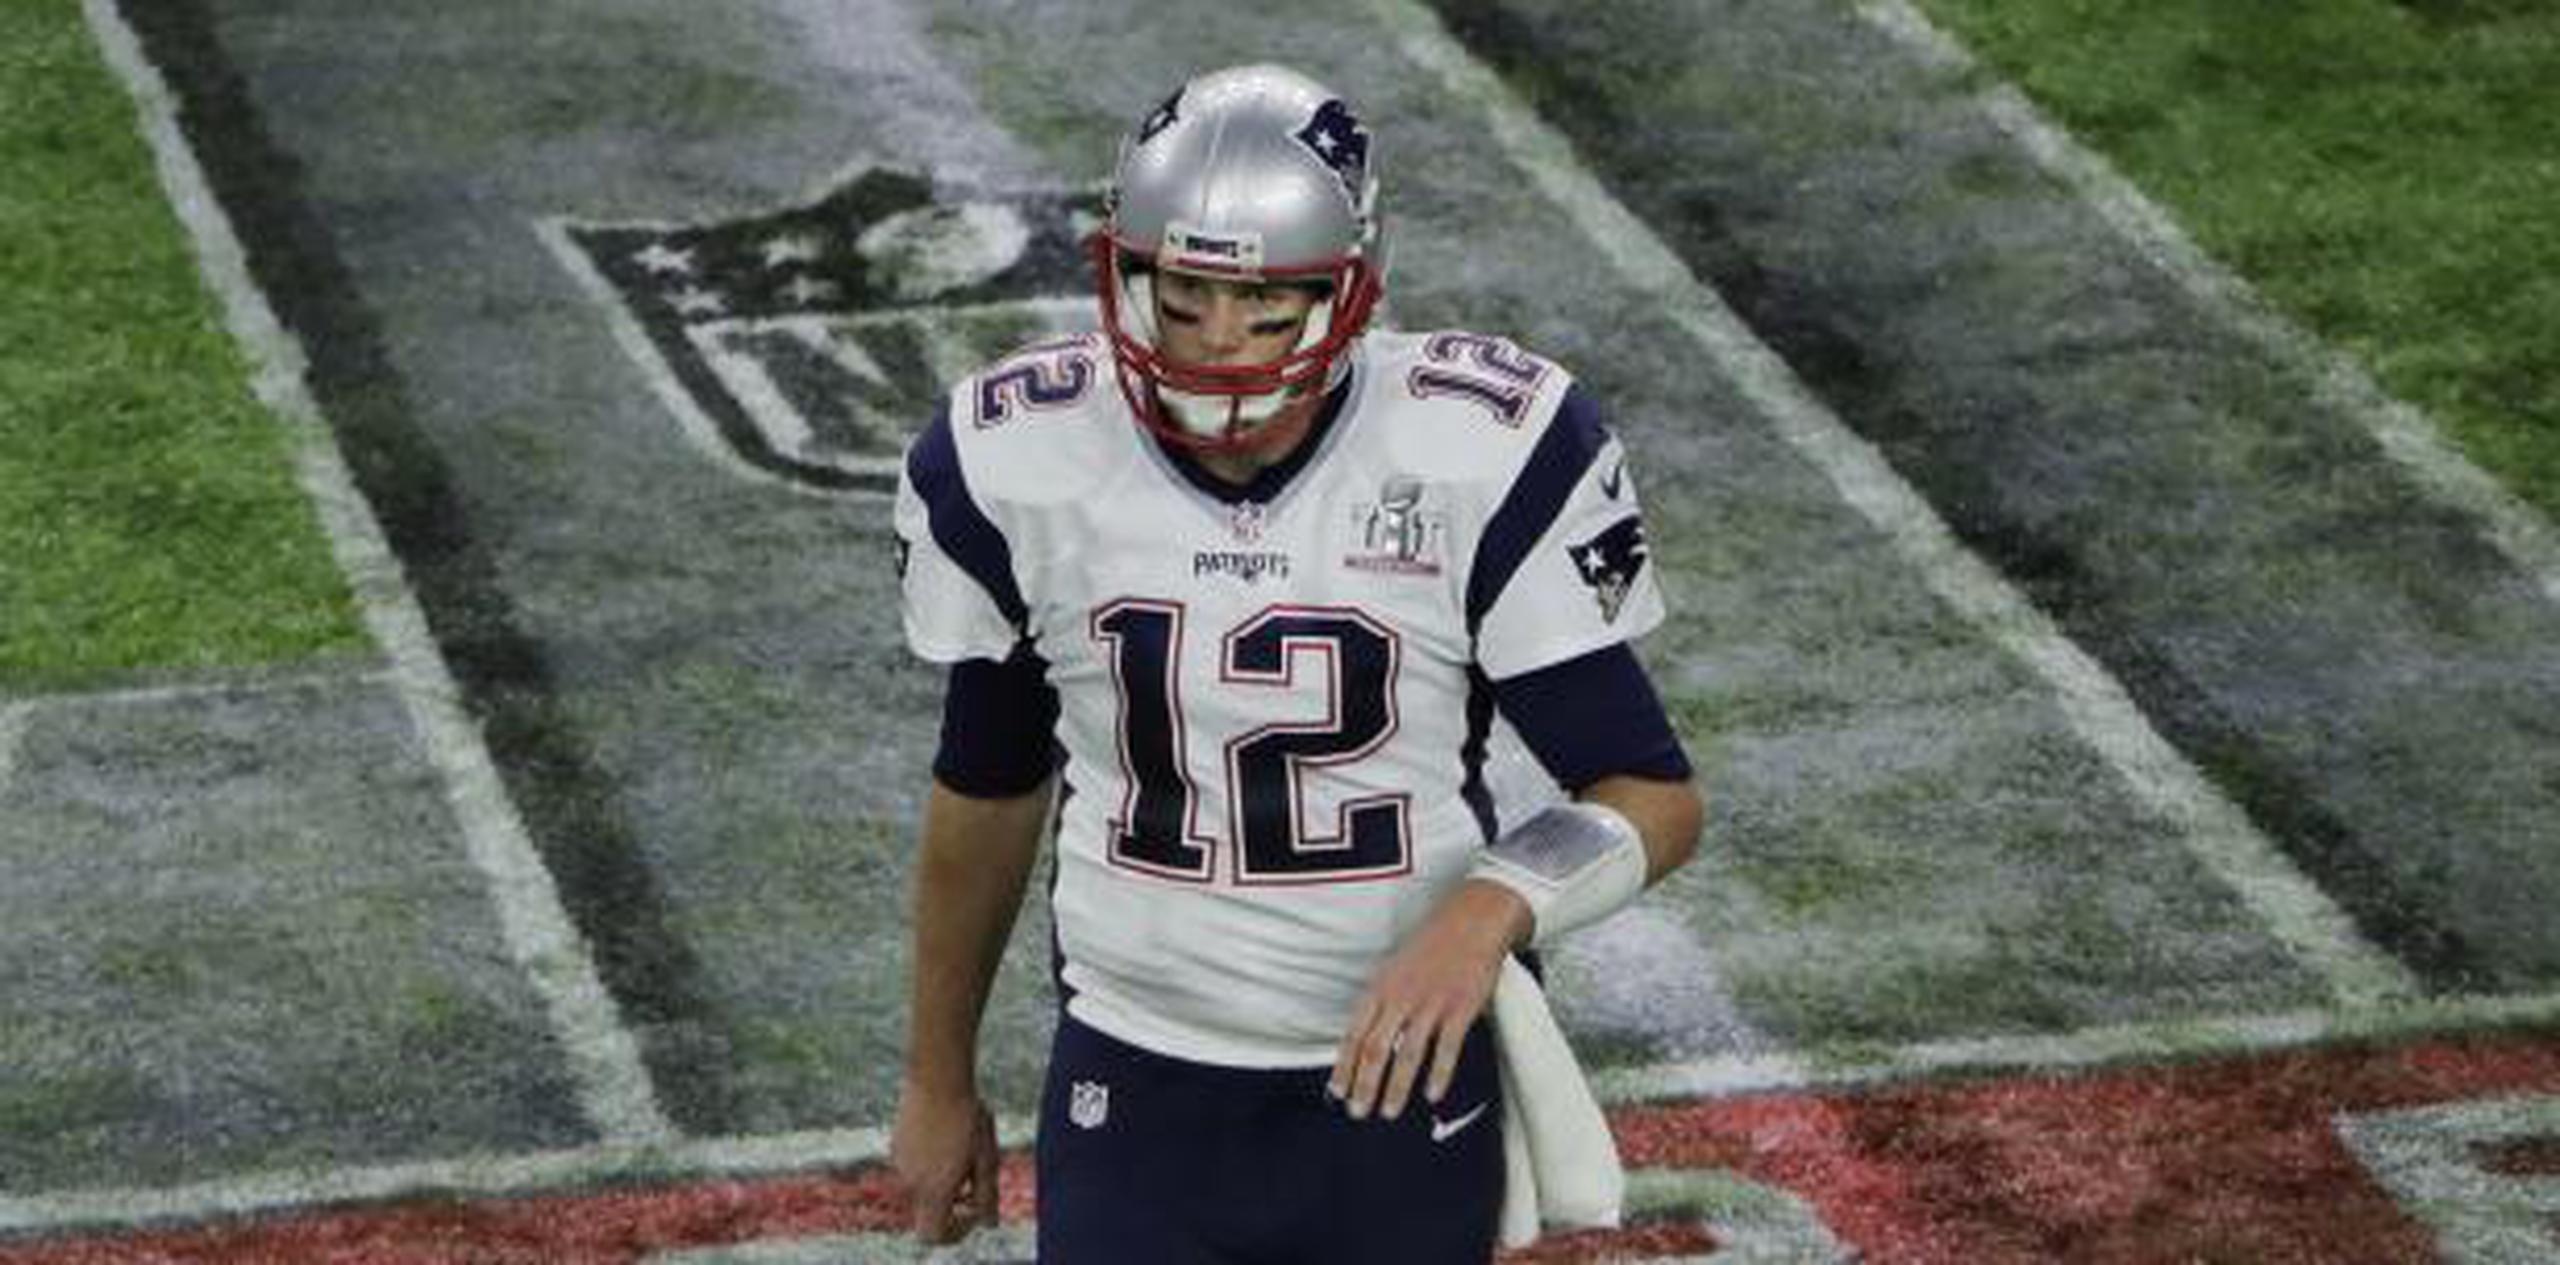 El jersey de Brady desapareció de los camerinos de los Patriots de Nueva Inglaterra en el NRG Stadium de Houston, después de la victoria del domingo sobre los Falcons de Atlanta en el Super Bowl LI. (Archivo)